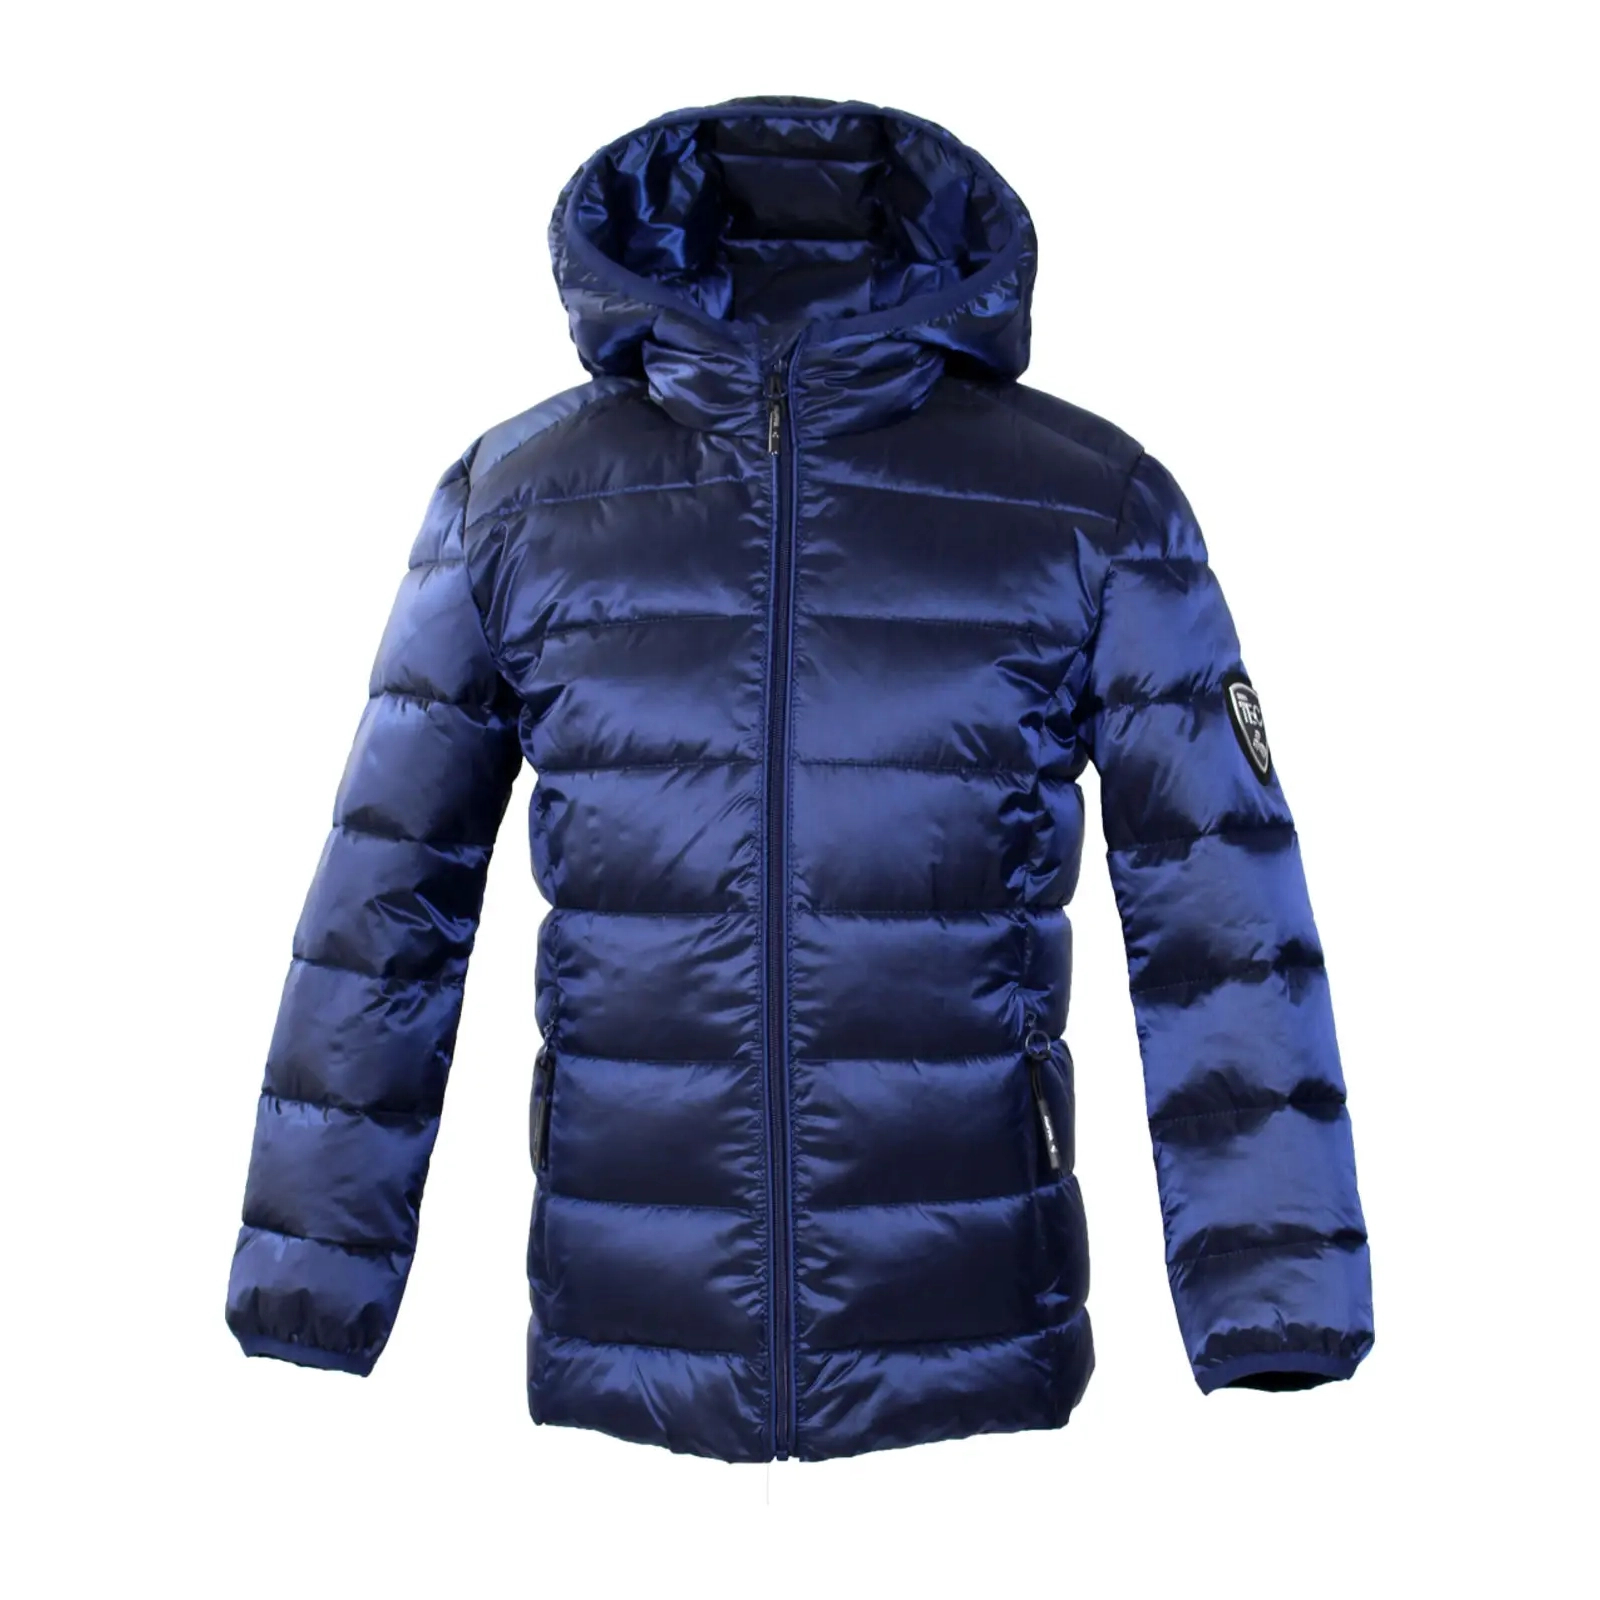 Куртка Huppa STEVO 2 17990227 синій 146 (4741468885032)